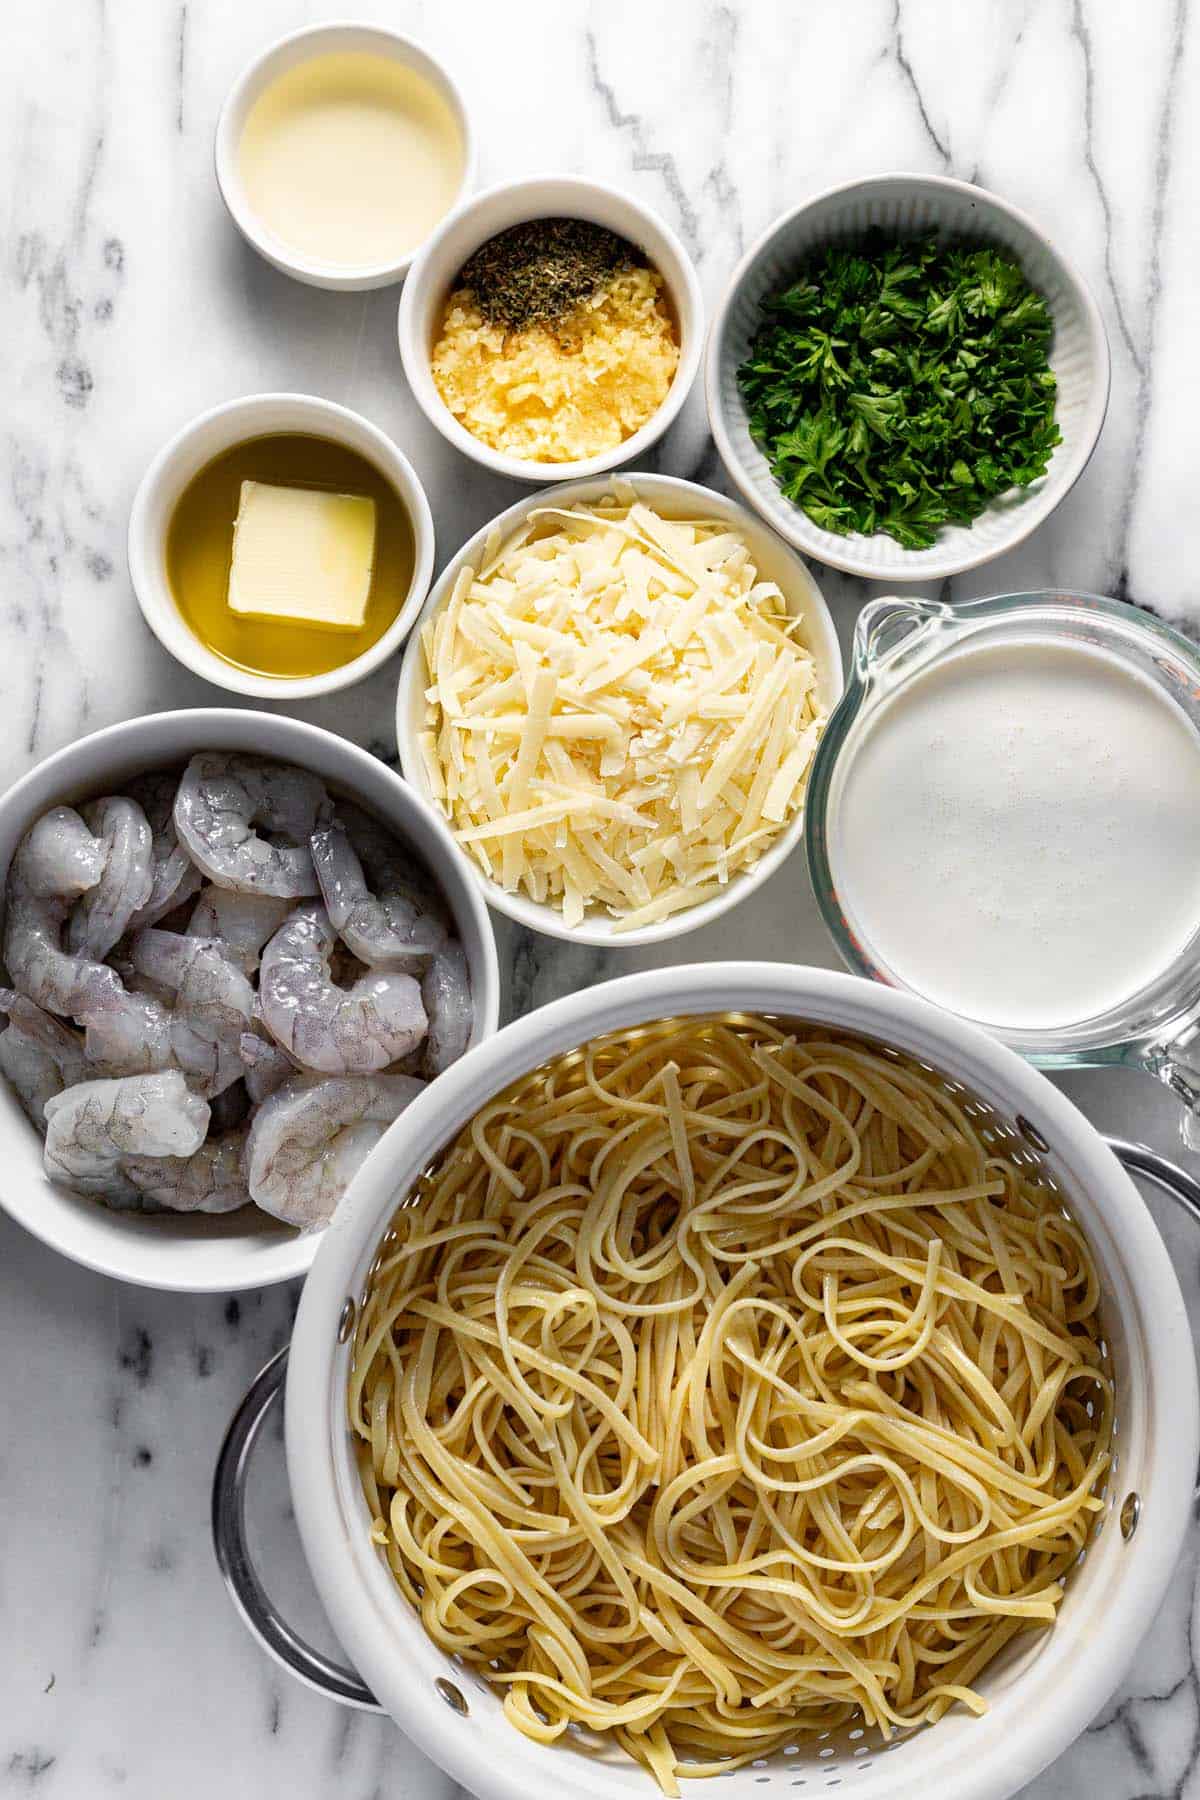 Bowls of ingredients to make shrimp pasta. 